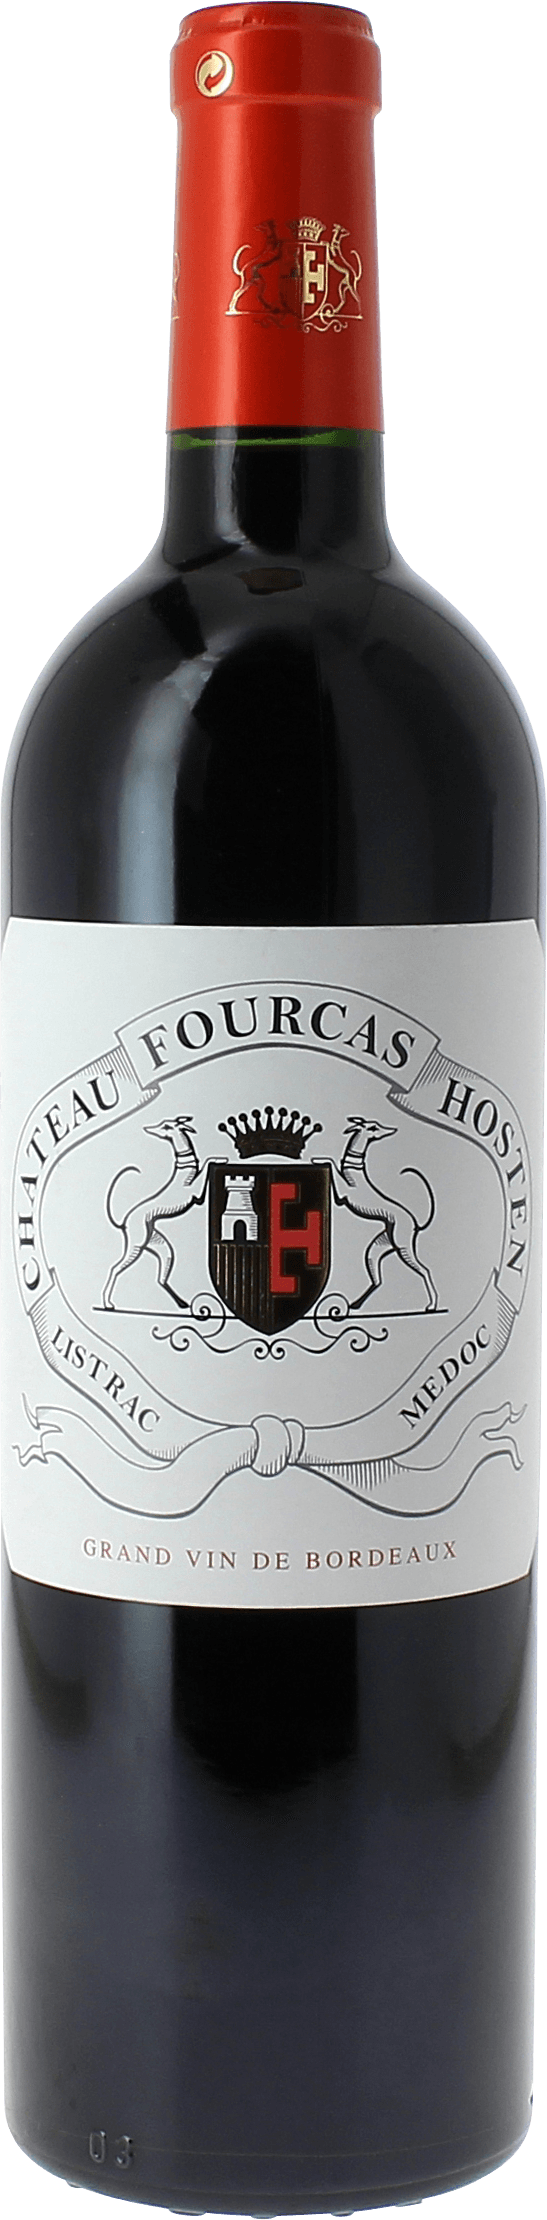 Fourcas hosten 2017  Listrac Mdoc, Slection Bordeaux Rouge